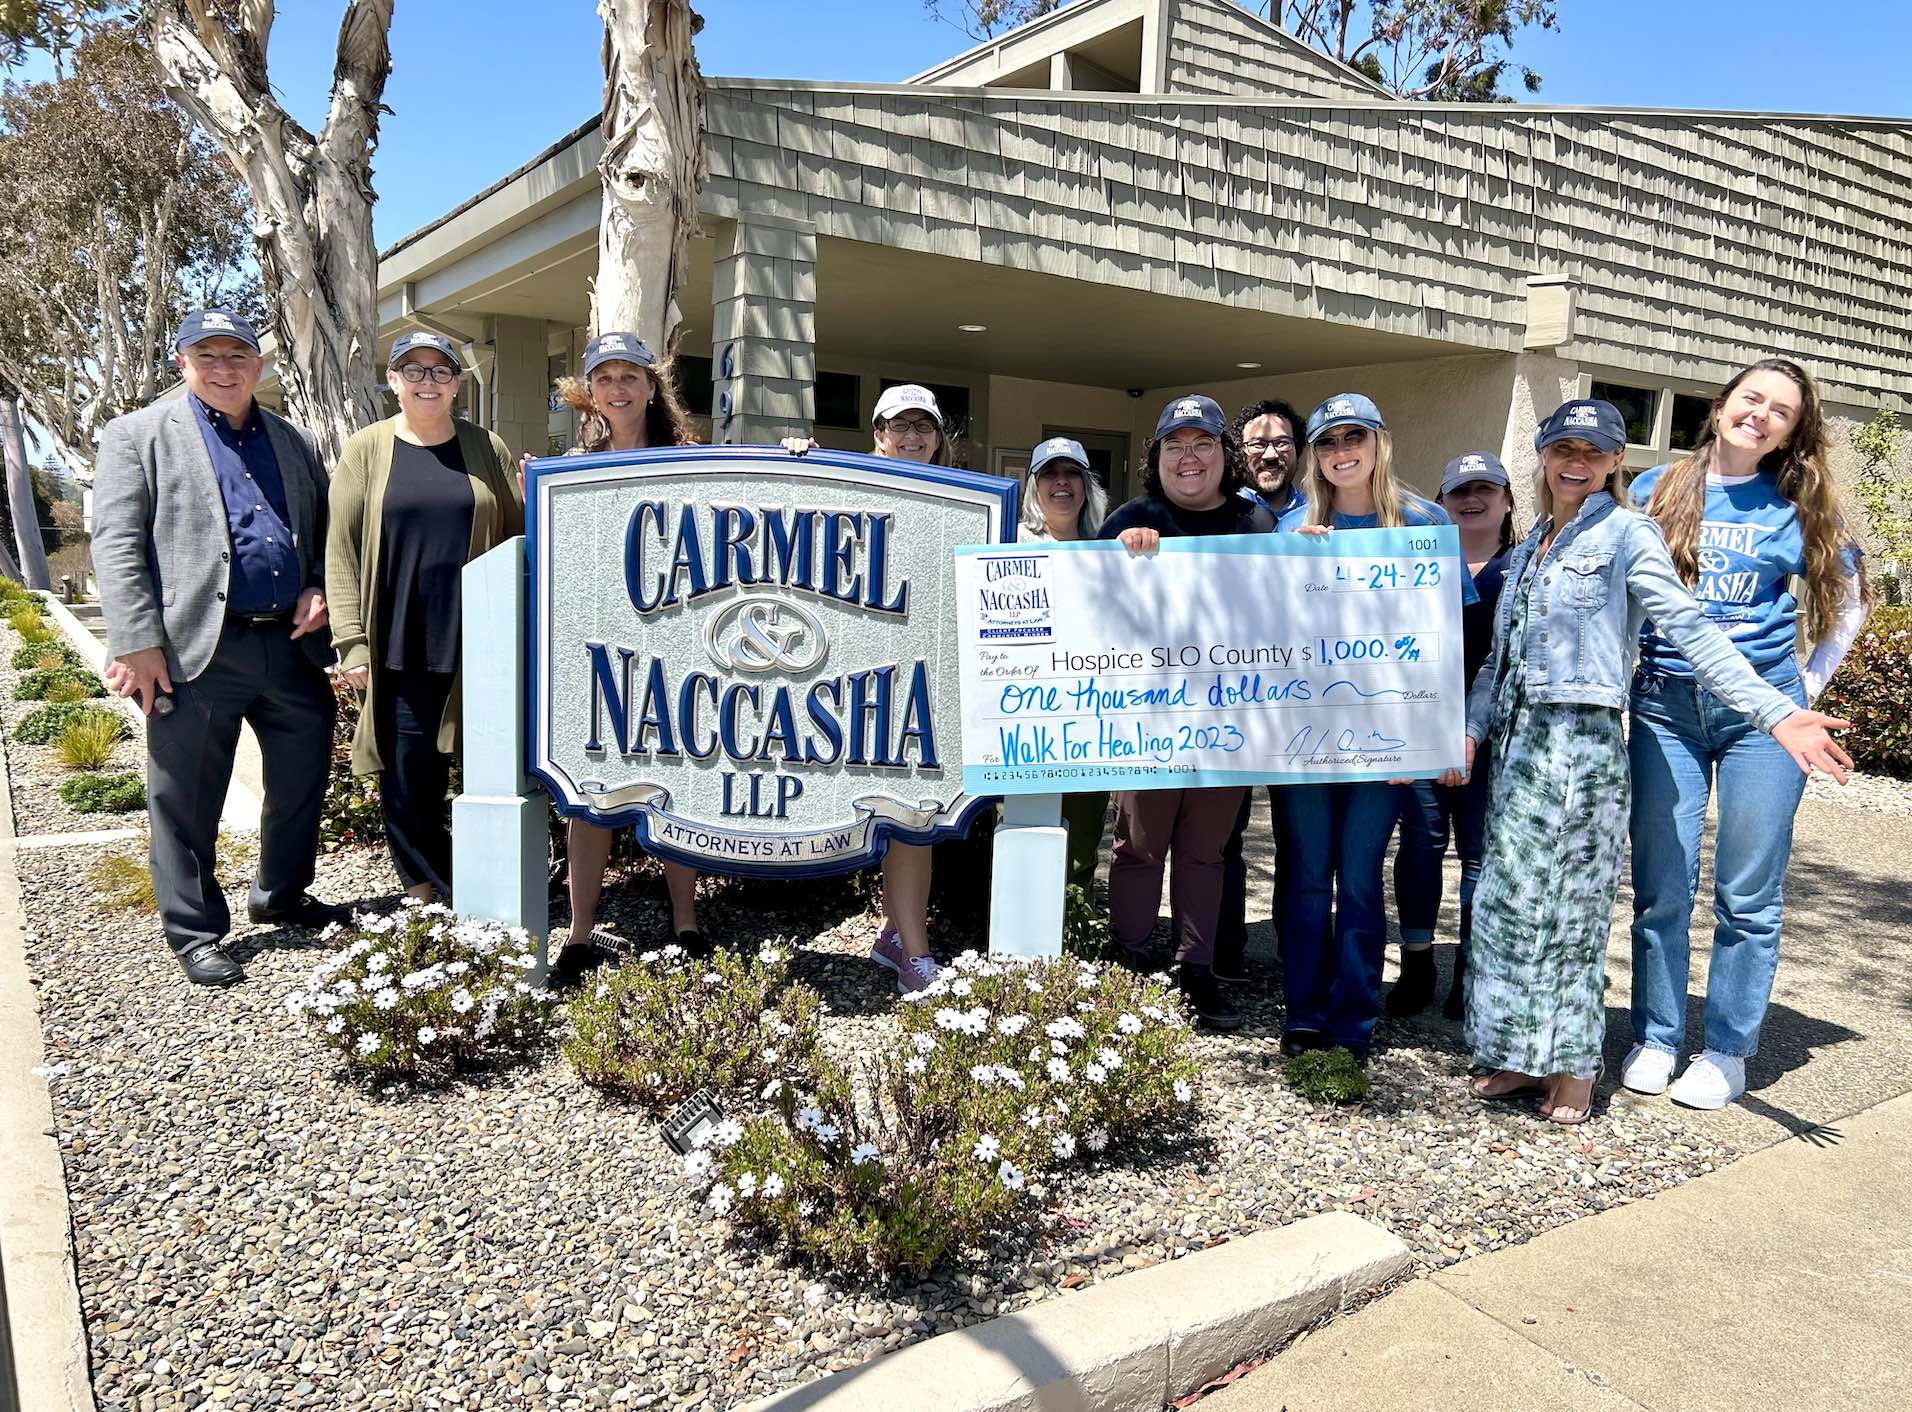 SLO Lawyers San Luis Obispo County CA - Carmel & Naccasha